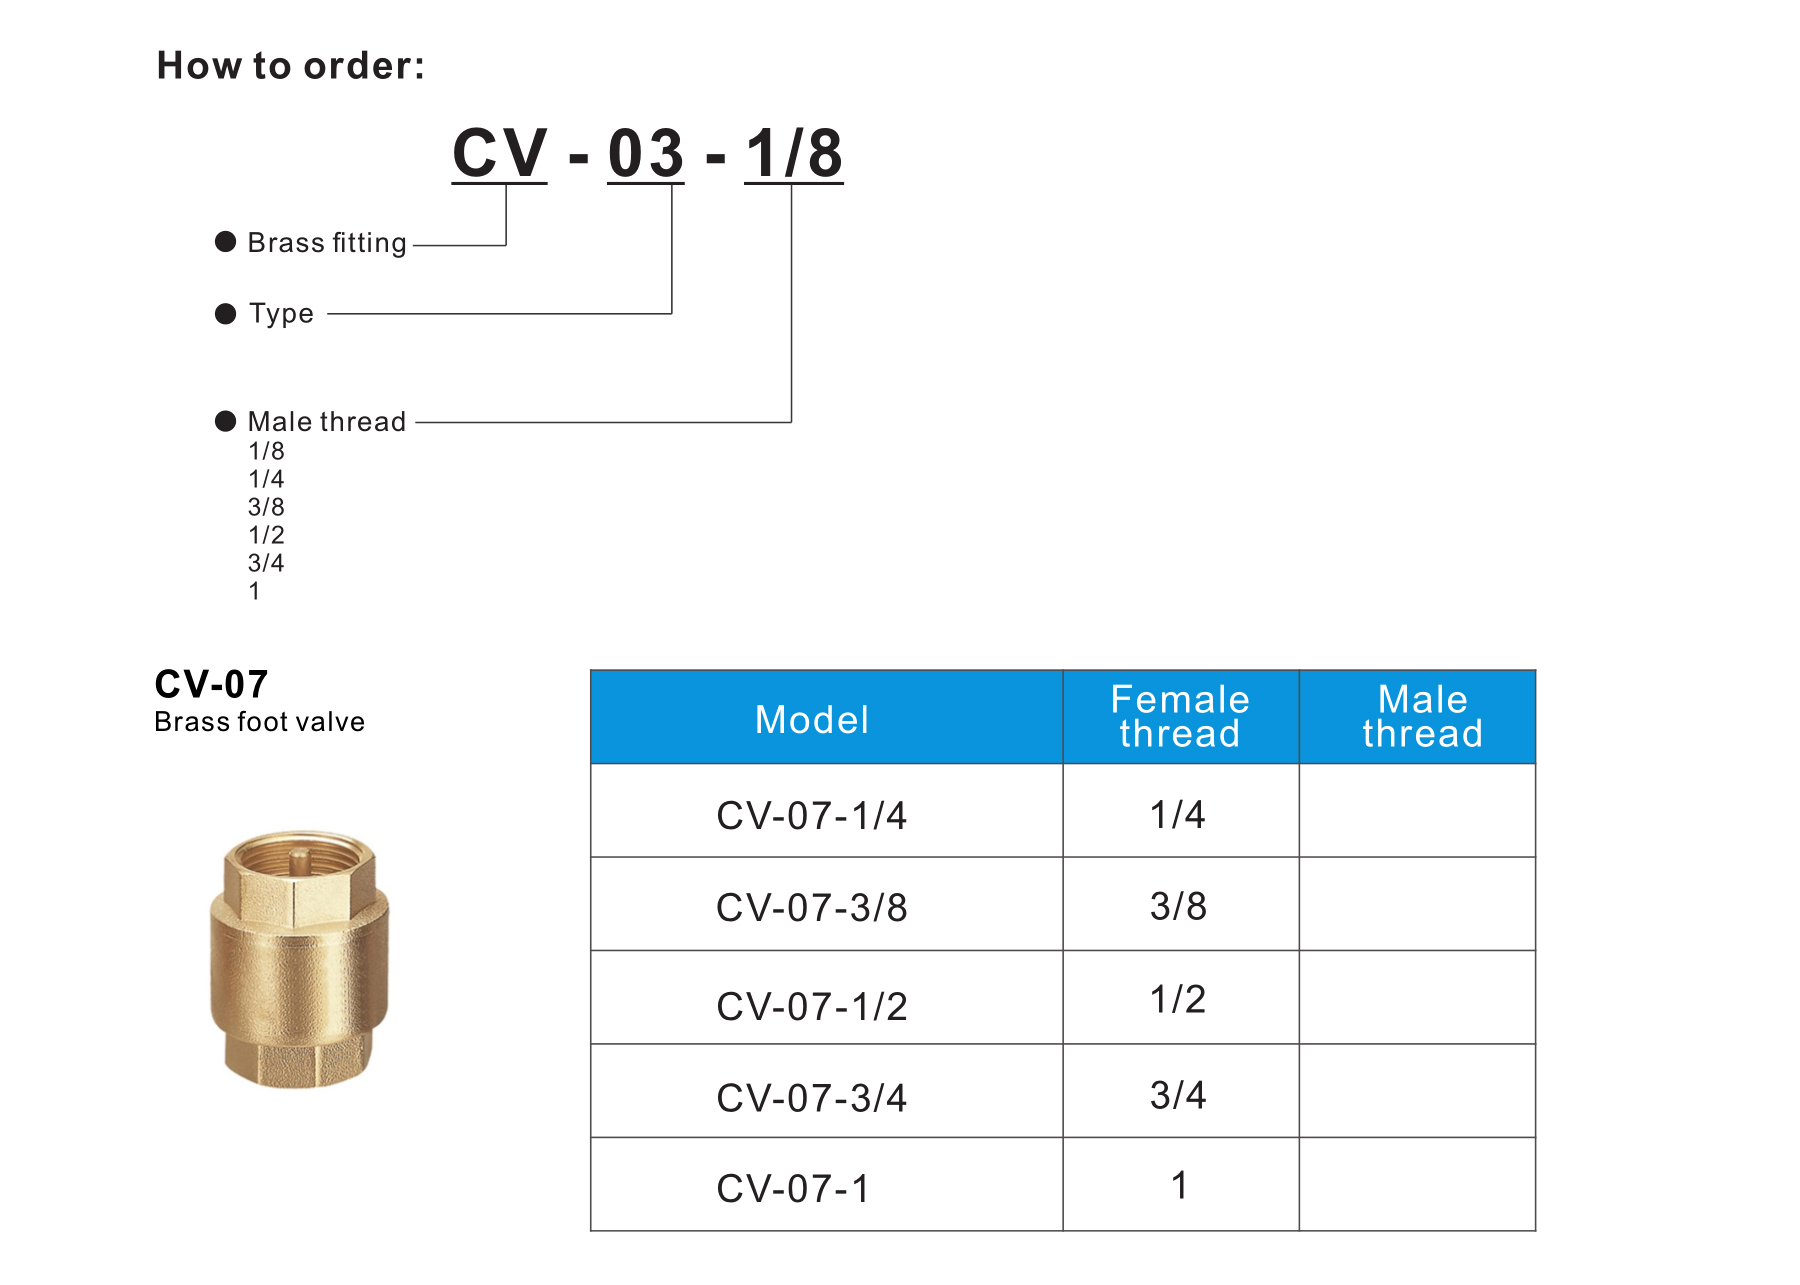 CV-07 Brass foot valve